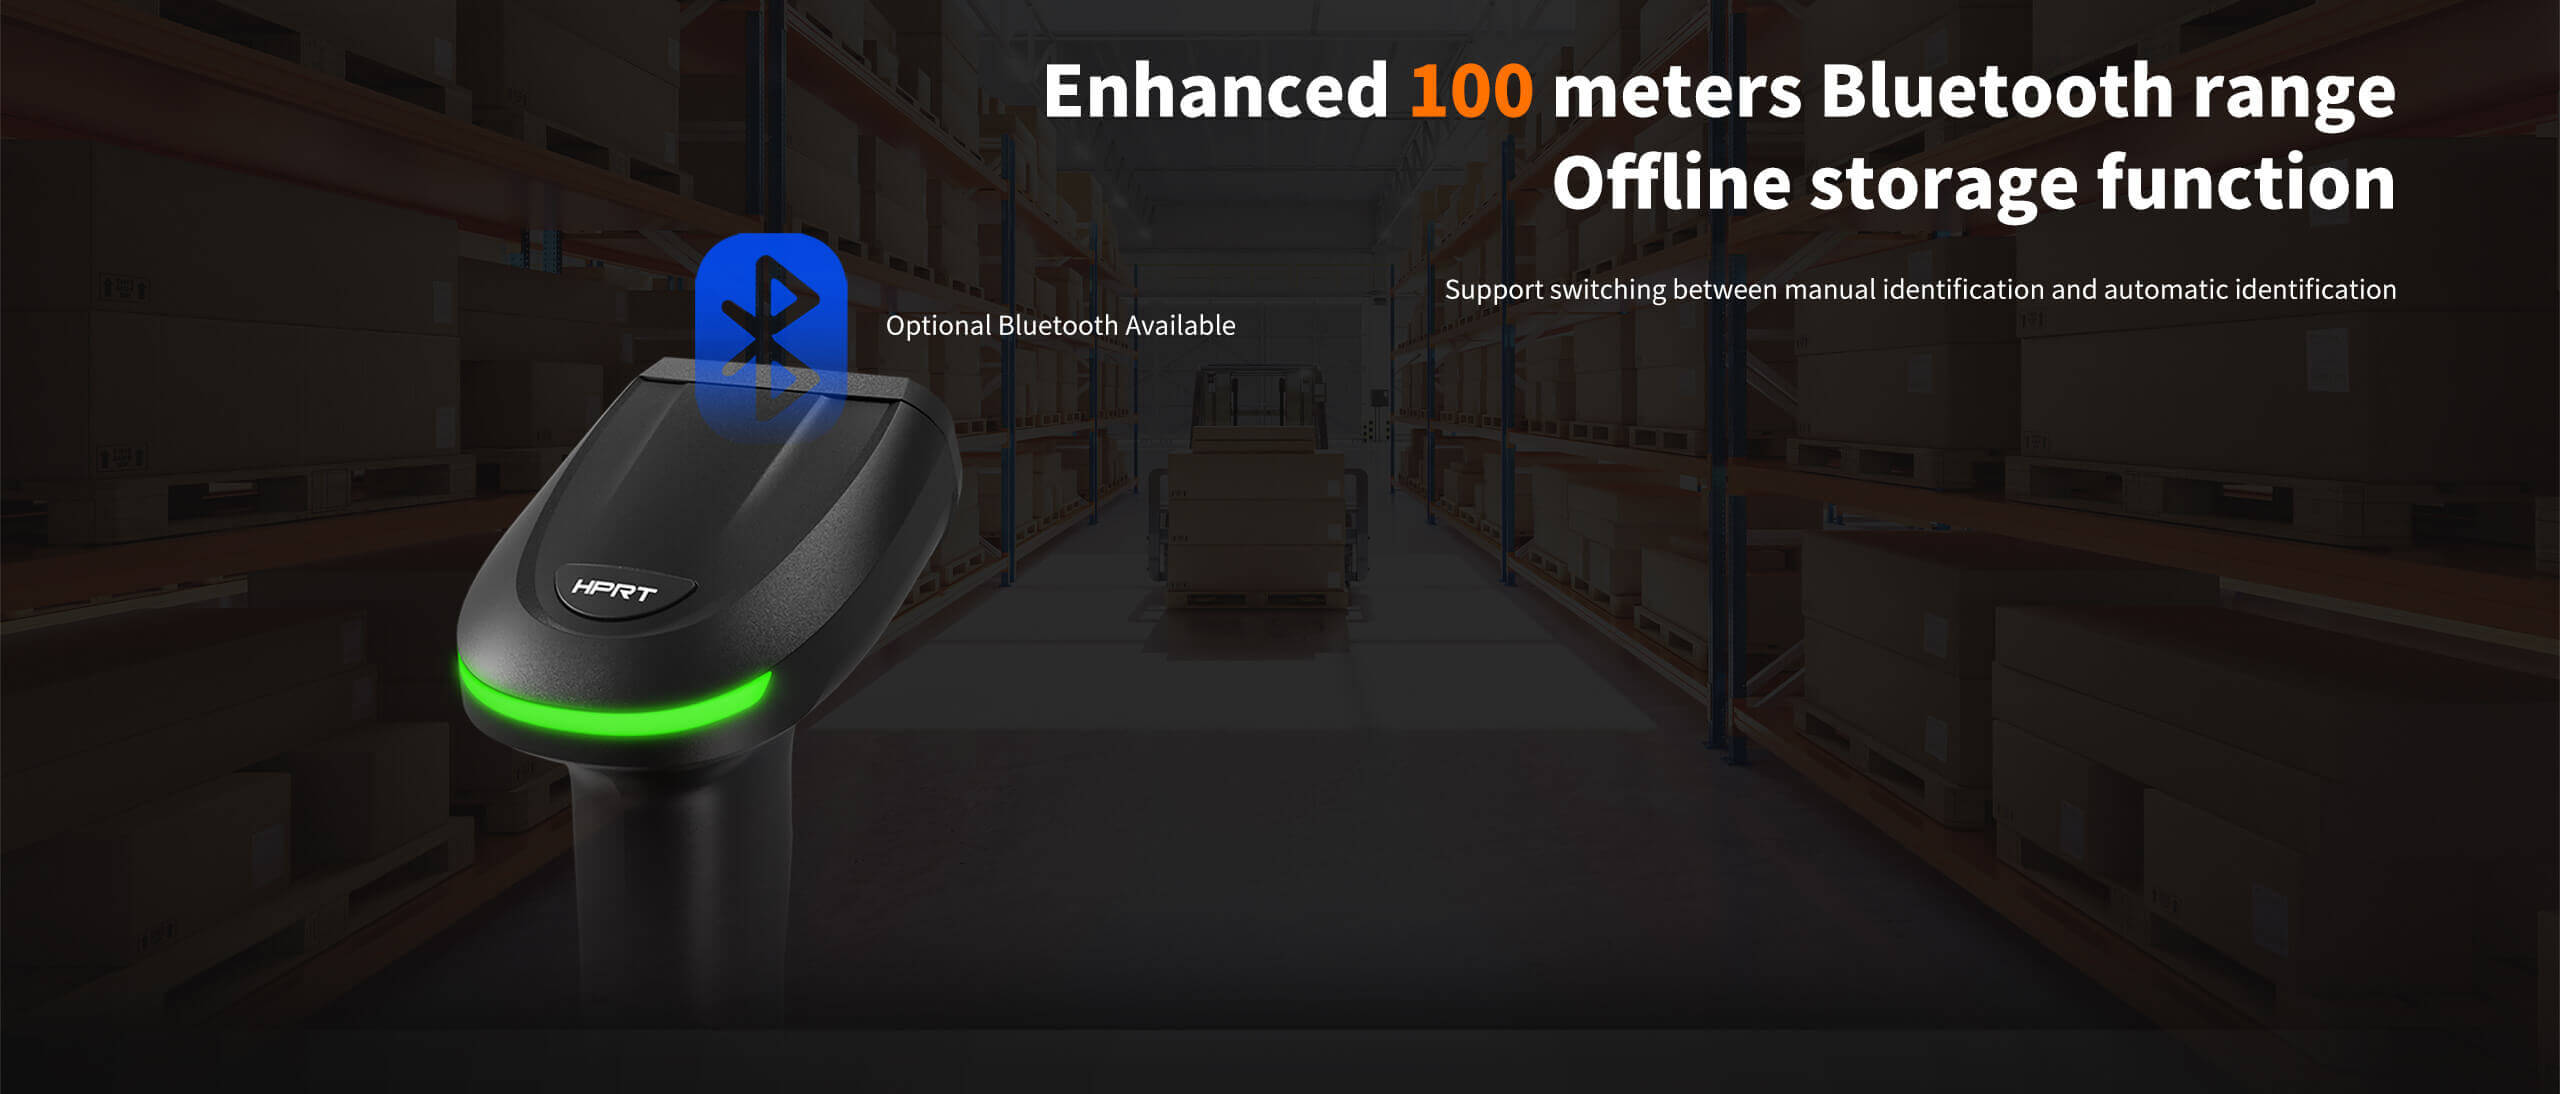 Enhanced 100 meters Bluetooth range offline storage function